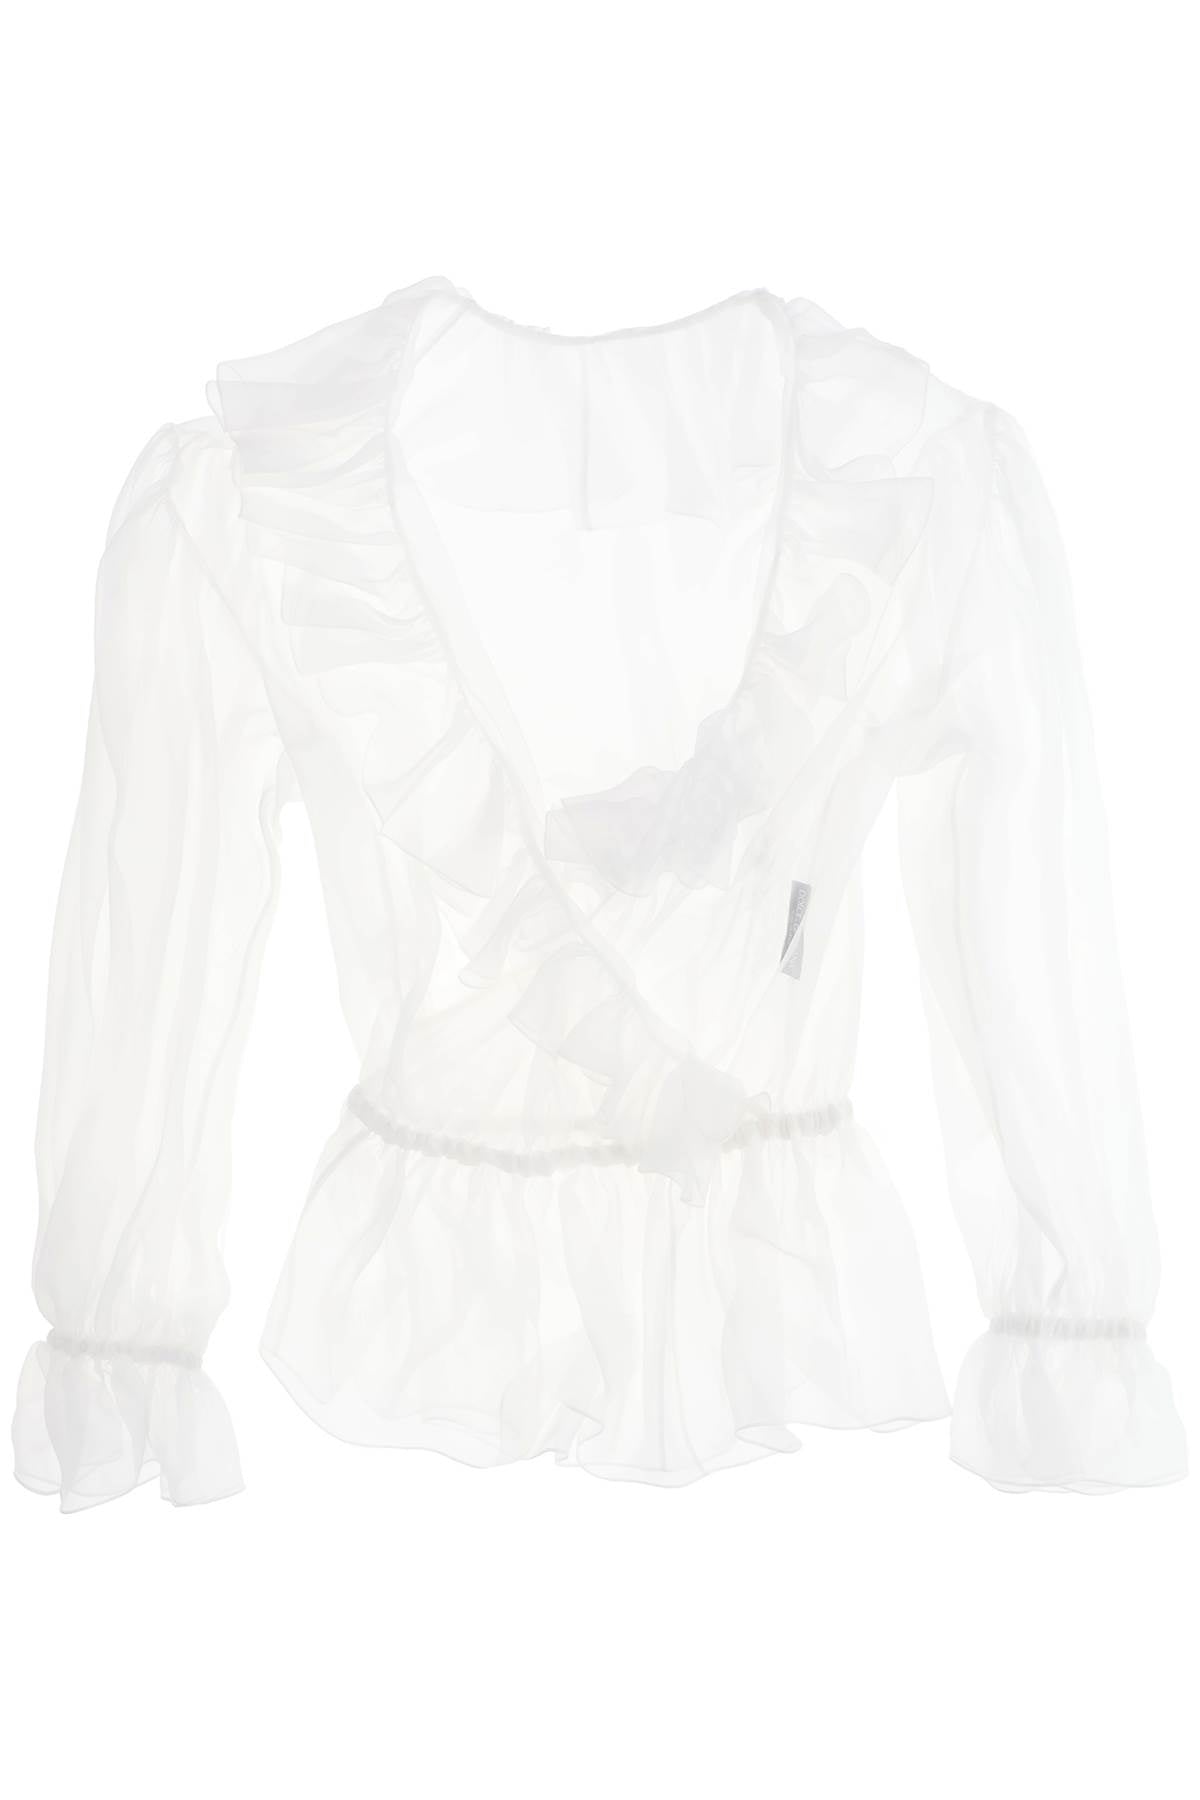 silk chiffon blouse with ruffles.